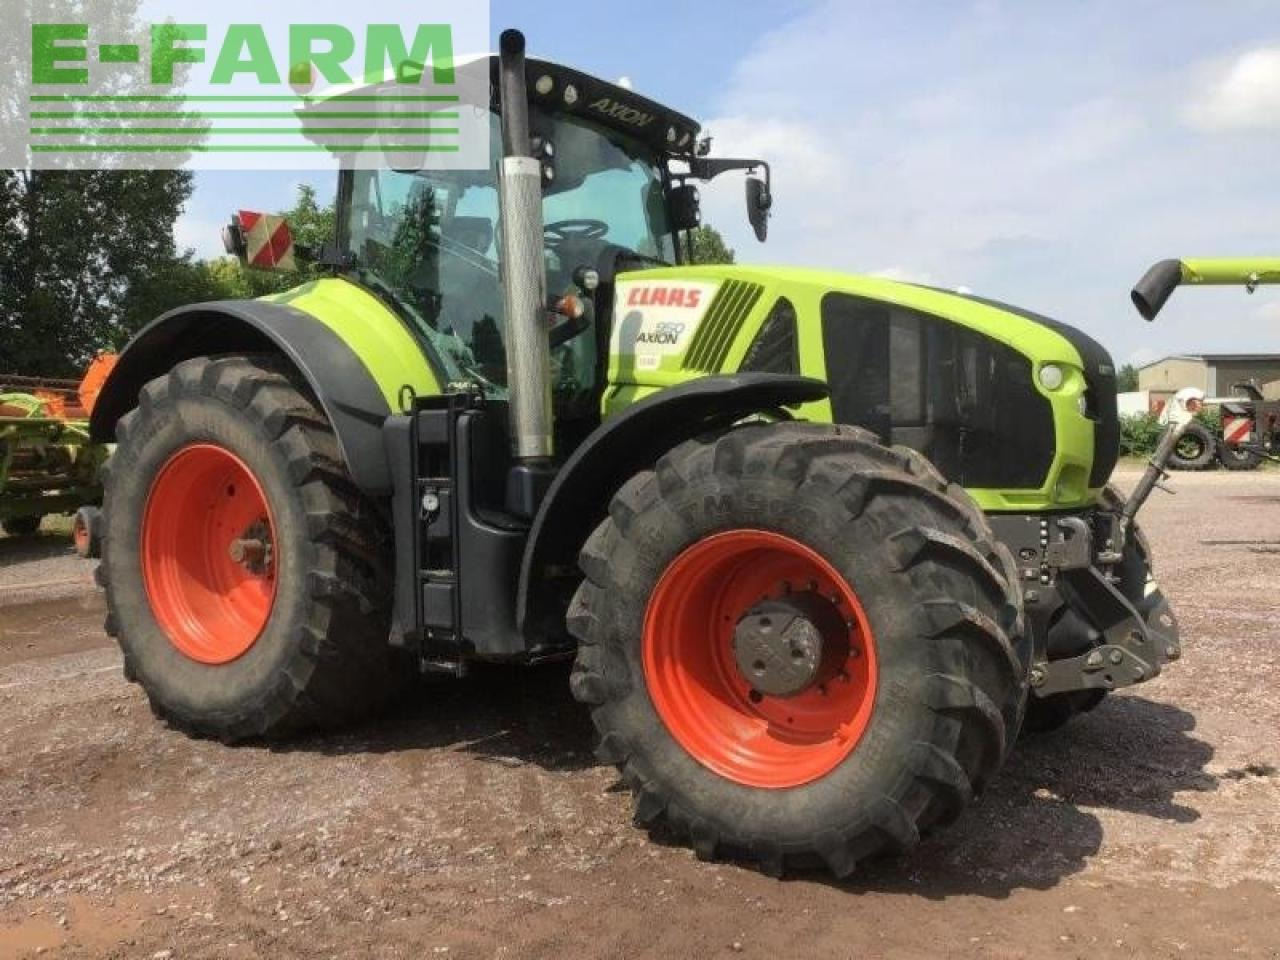 Farm tractor CLAAS axion 950